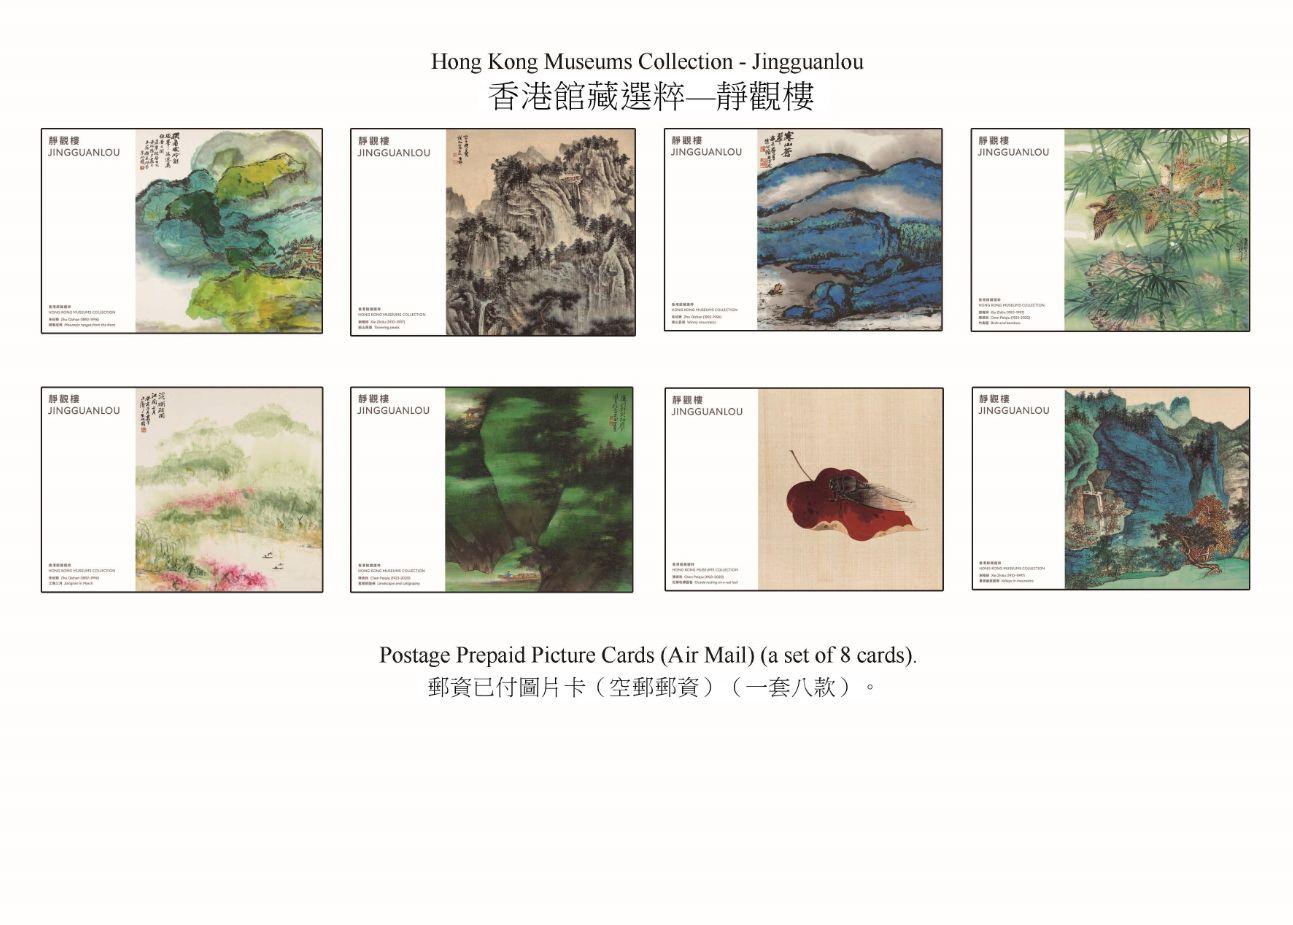 香港郵政三月二十三日（星期四）發行以「香港館藏選粹──靜觀樓」為題的特別郵票及相關集郵品。圖示郵資已付圖片卡（空郵郵資）。